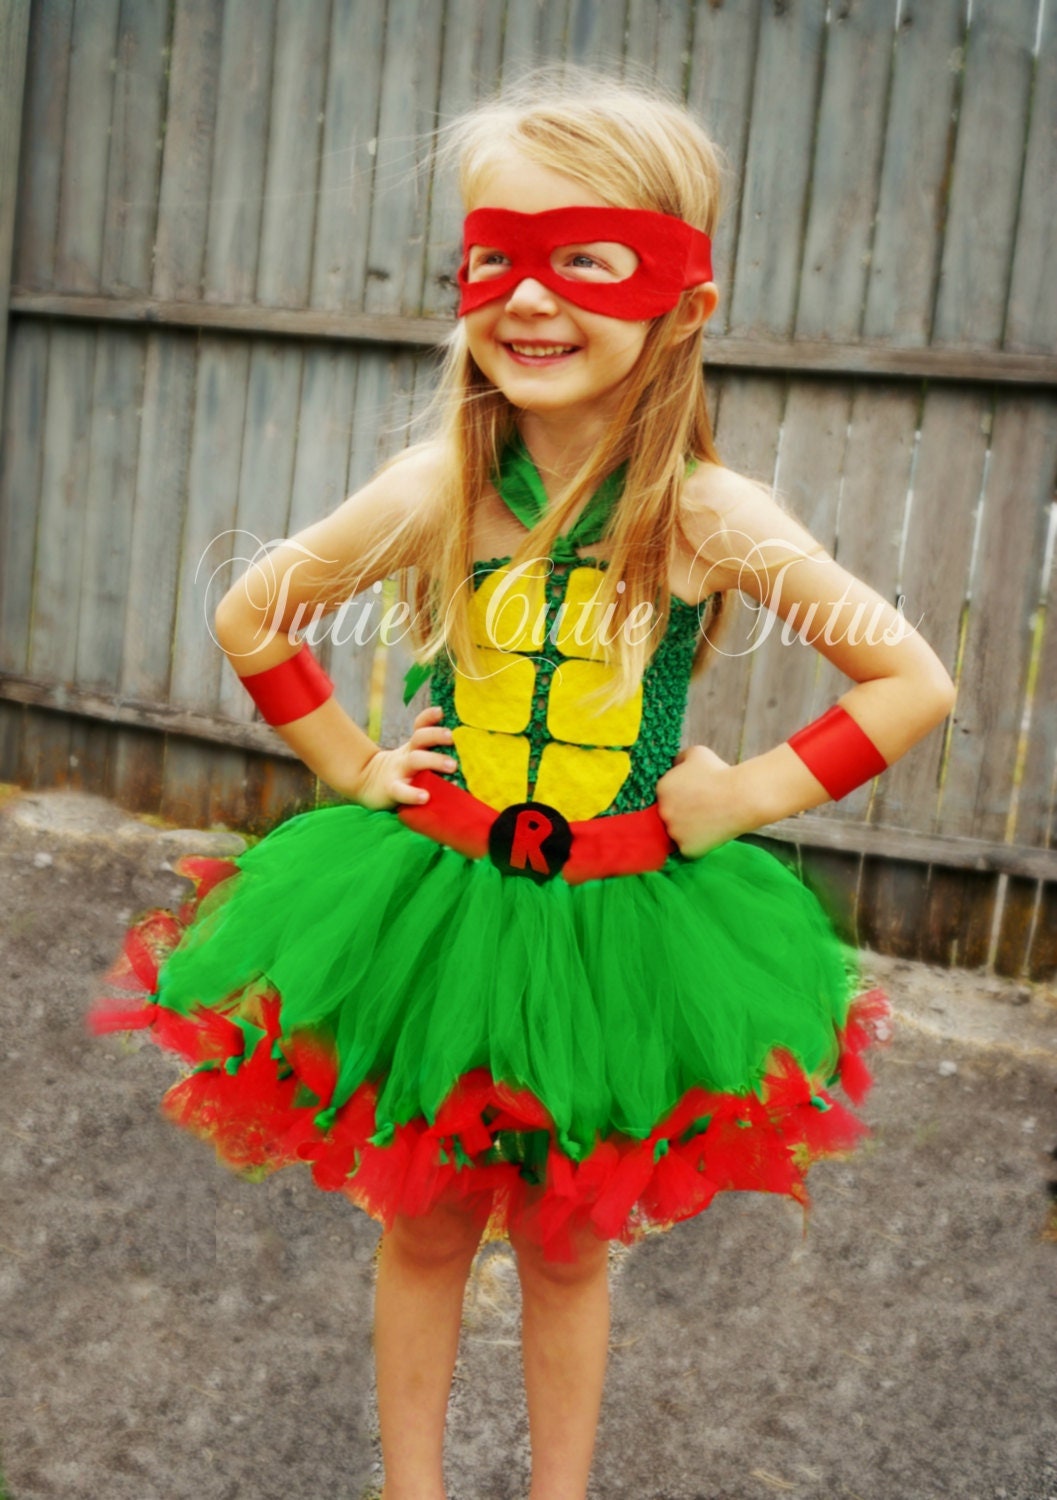 Teenage Mutant Ninja Turtles Classic Leonardo Inflatable Adult Costume